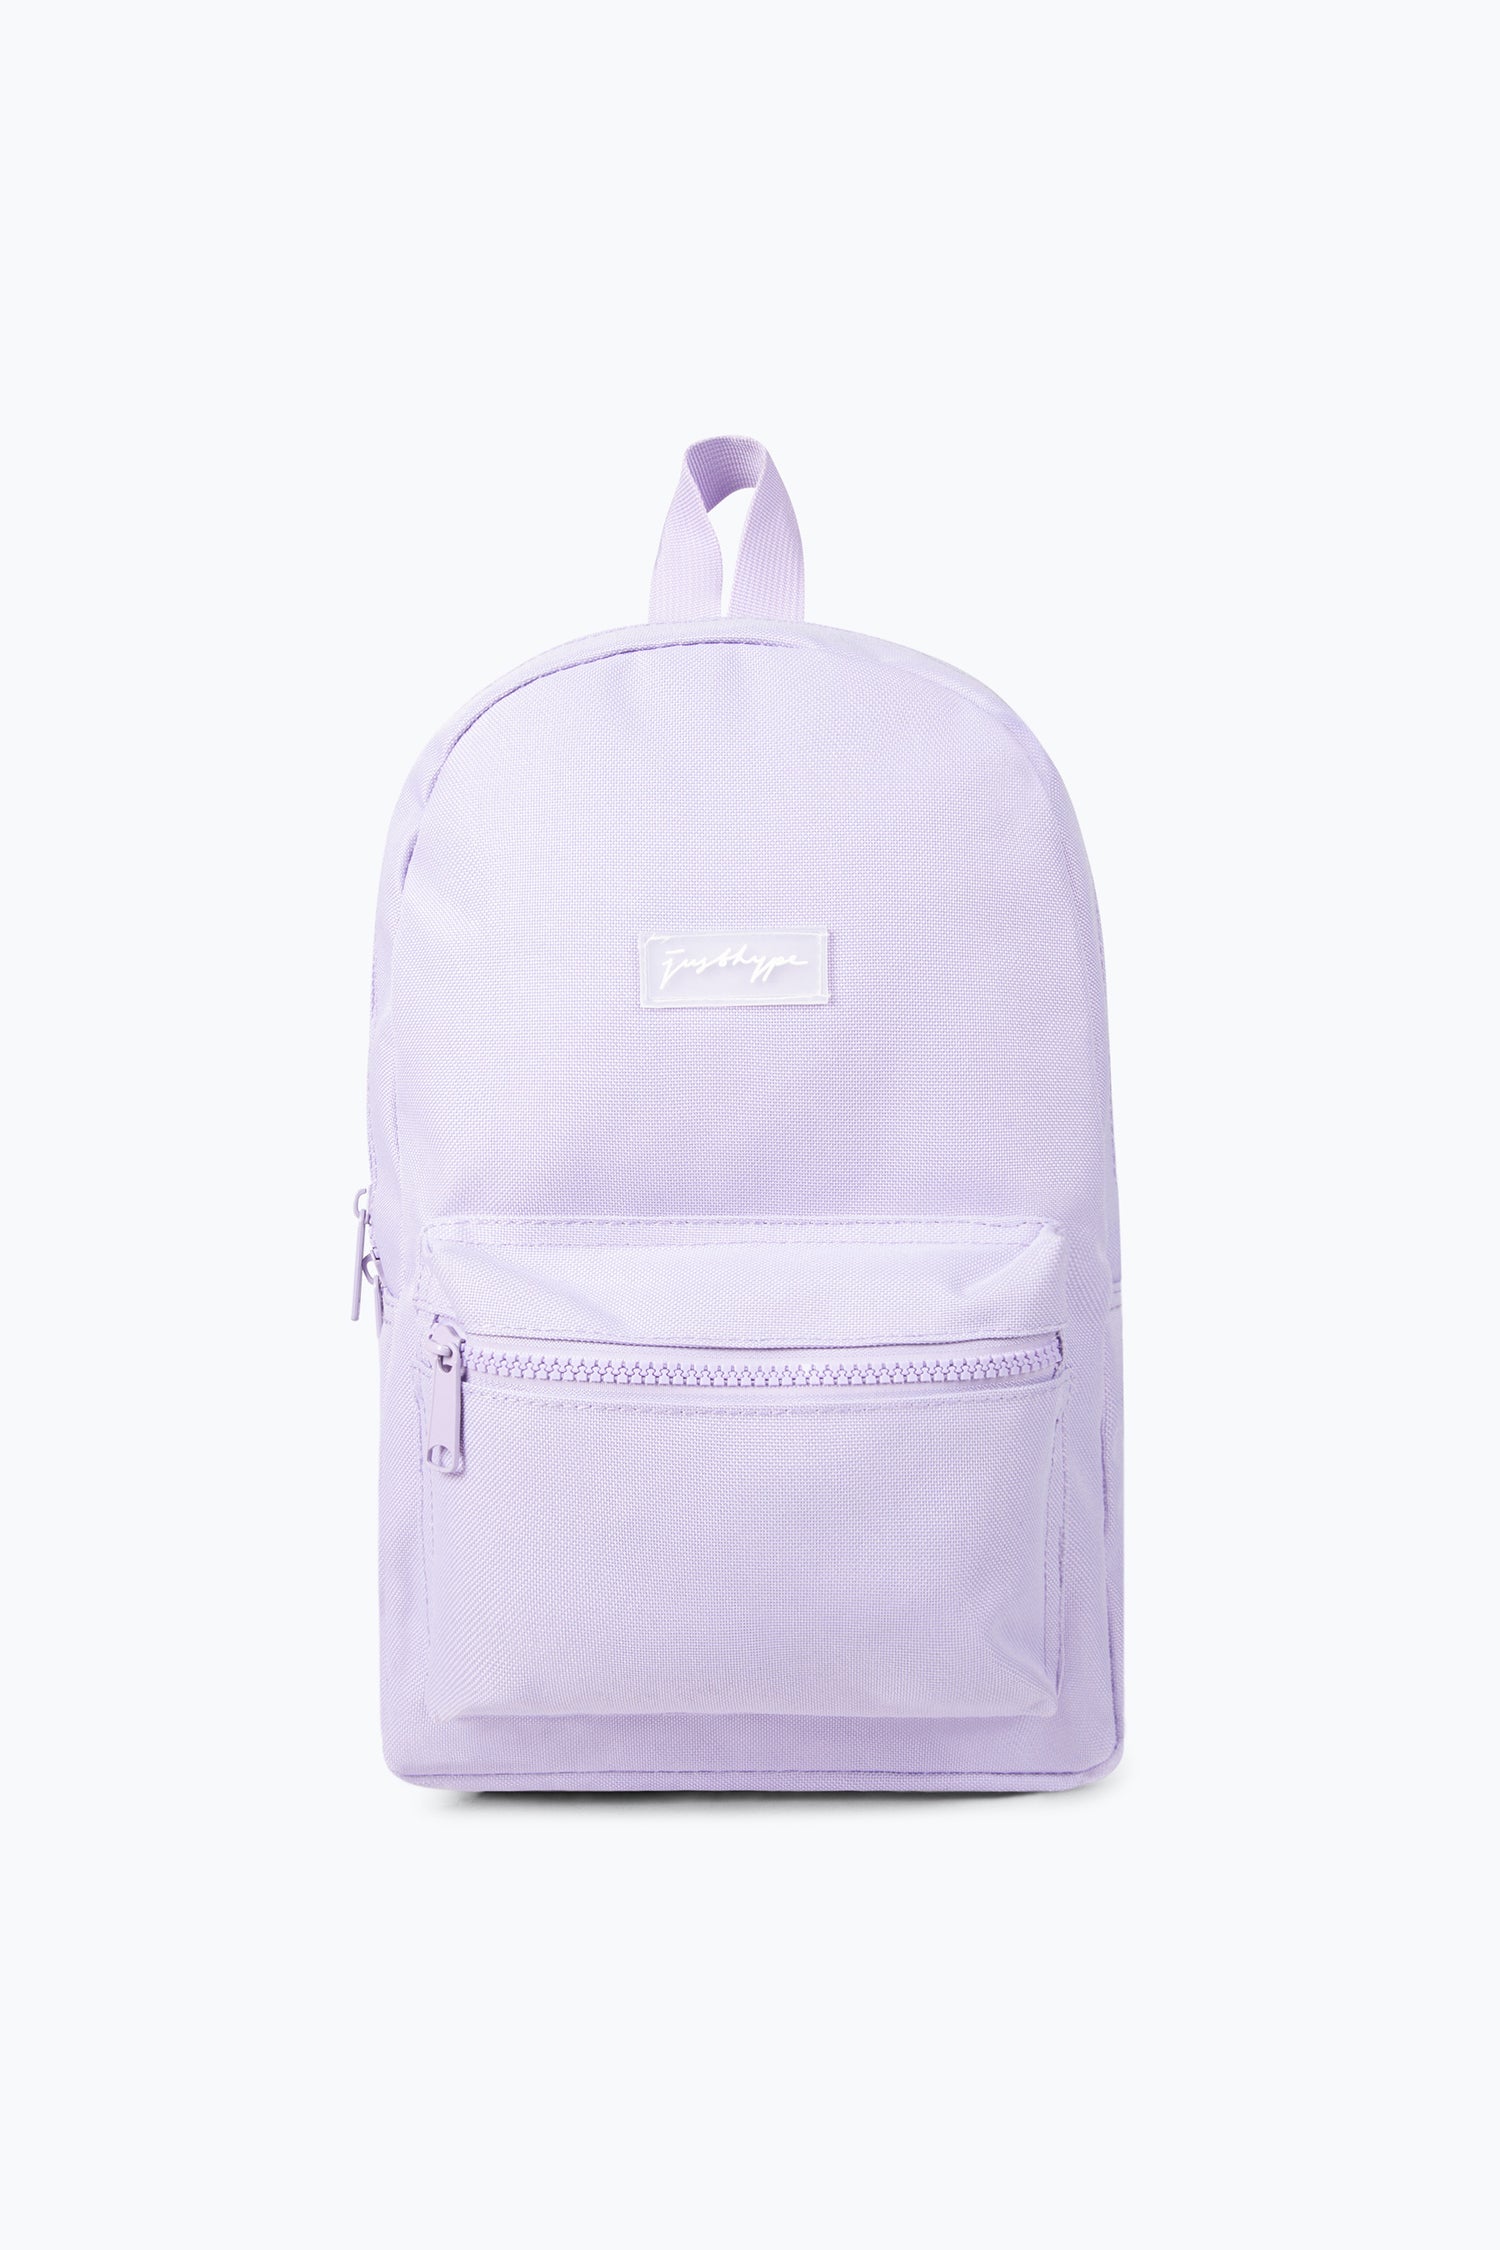 Back To School Mini Backpacks